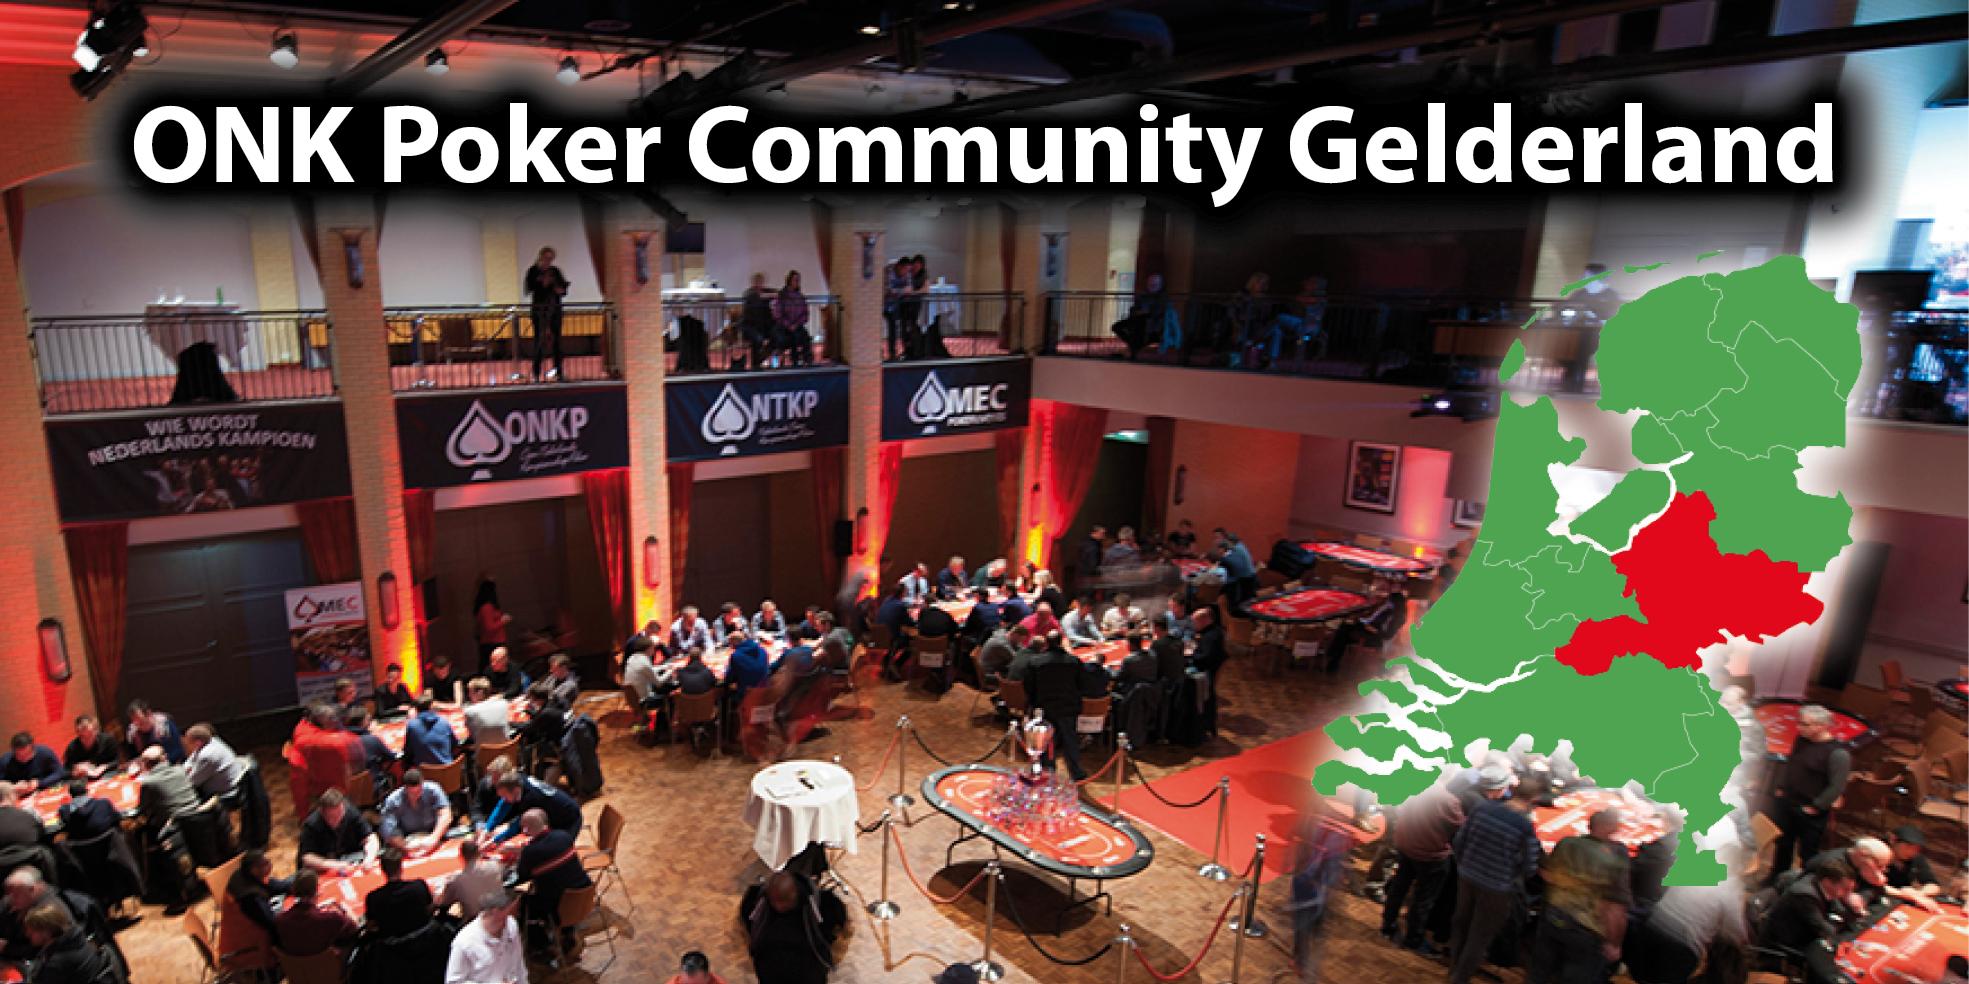 ONK Poker communities